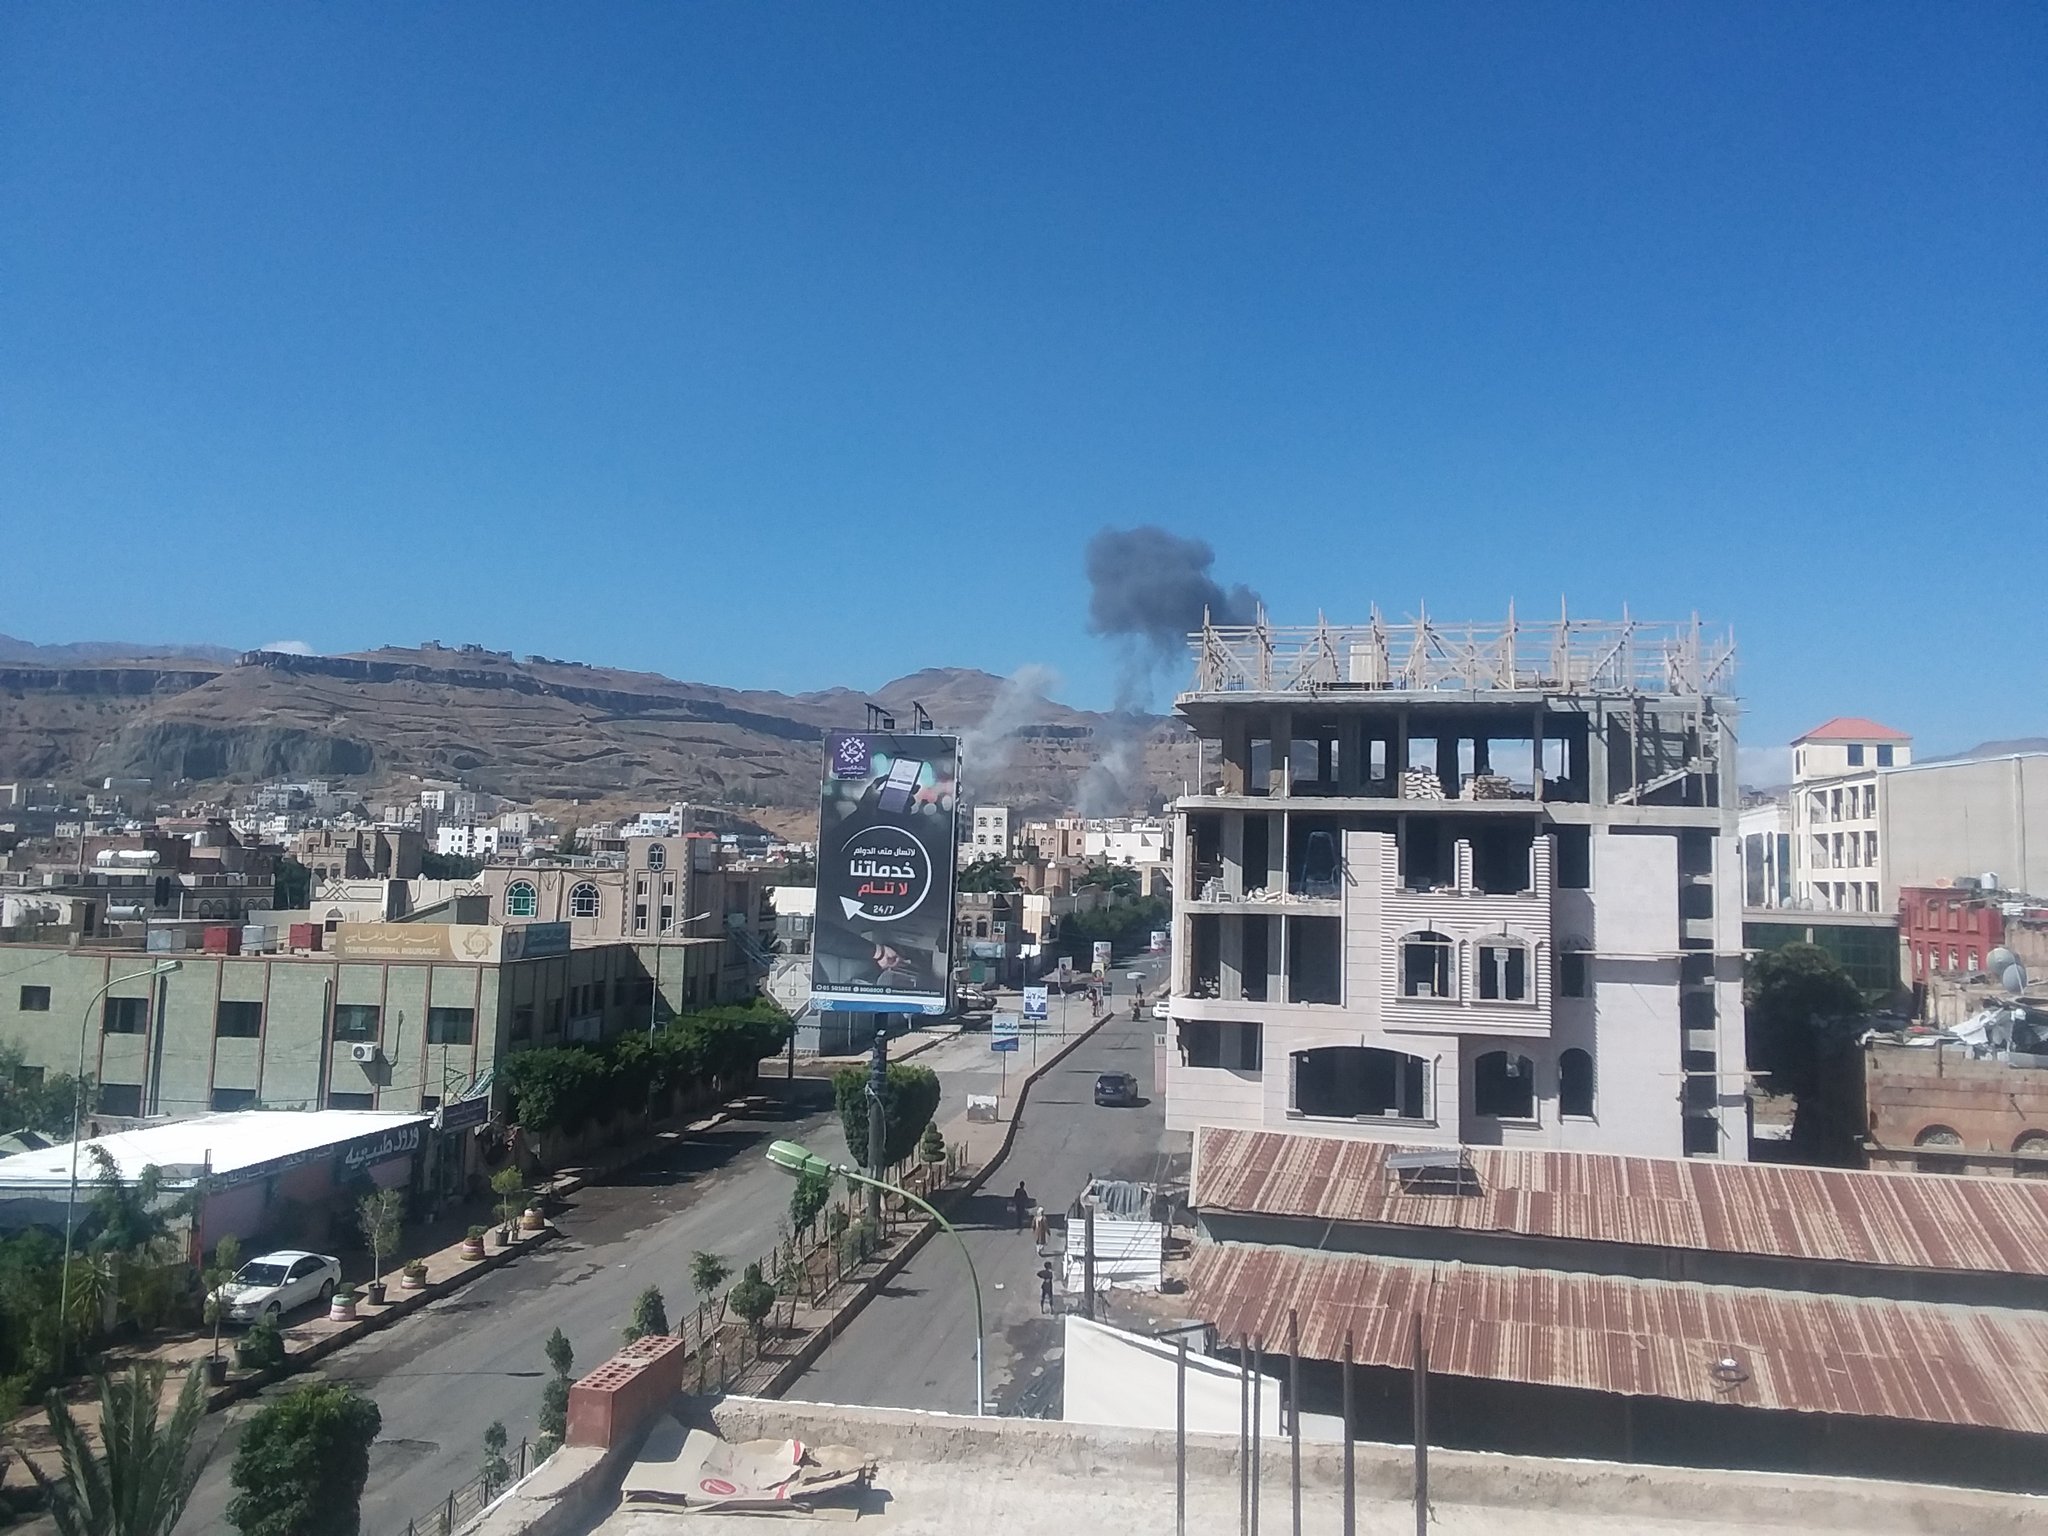 عاجل : شاهد أولى الصور لأماكن الانفجارات العنيفة التي هزت العاصمة صنعاء قبل قليل 